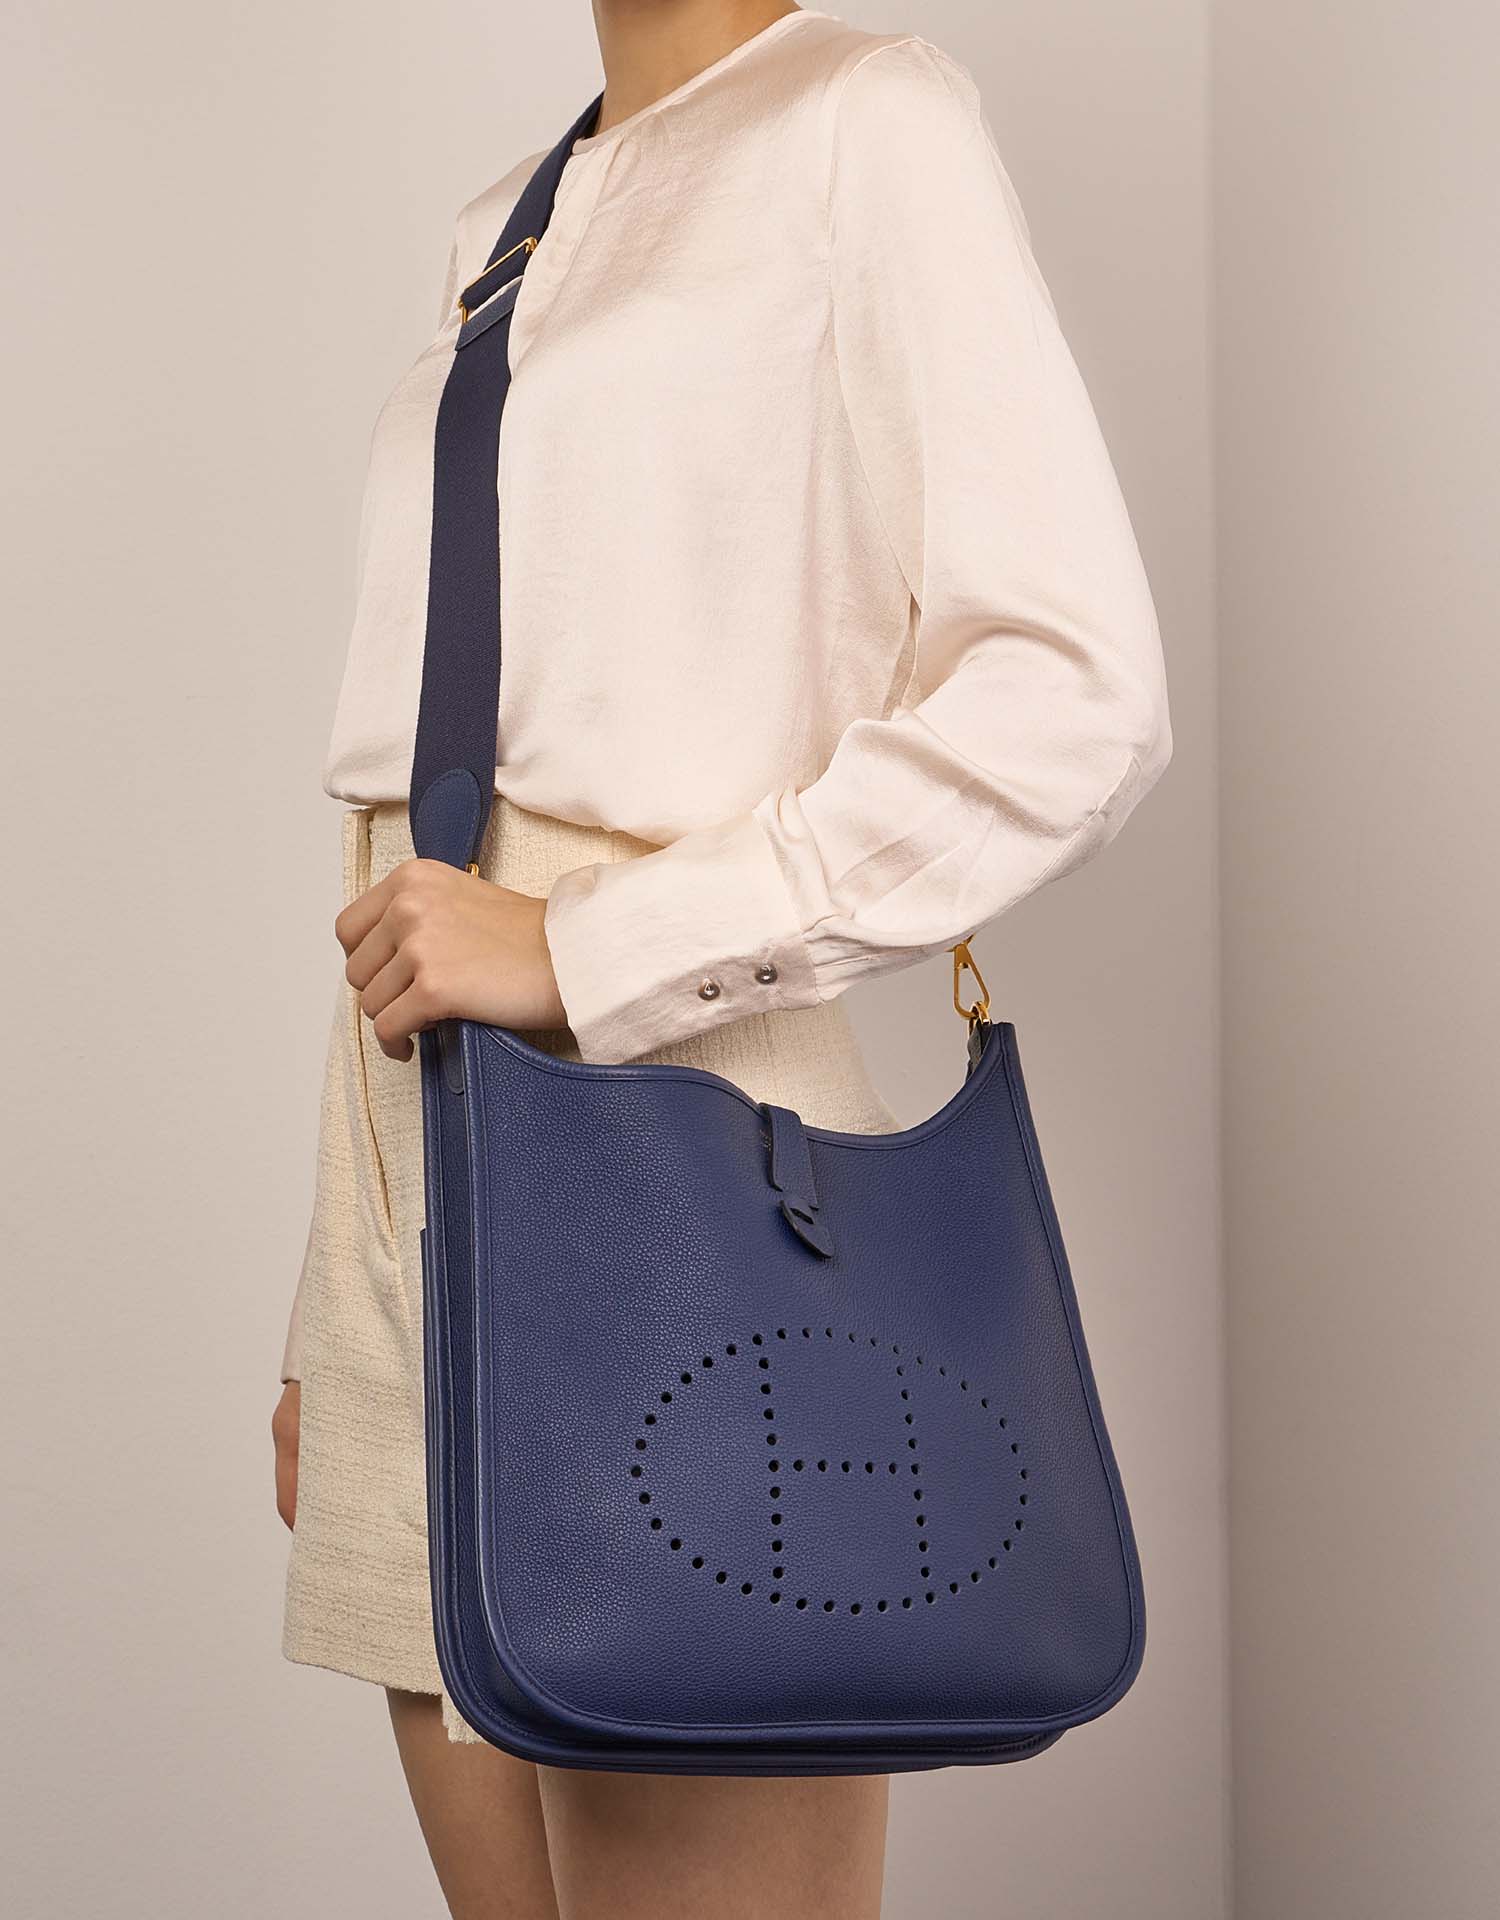 Hermès Evelyne 29 BleuSapphire Größen Getragen | Verkaufen Sie Ihre Designer-Tasche auf Saclab.com